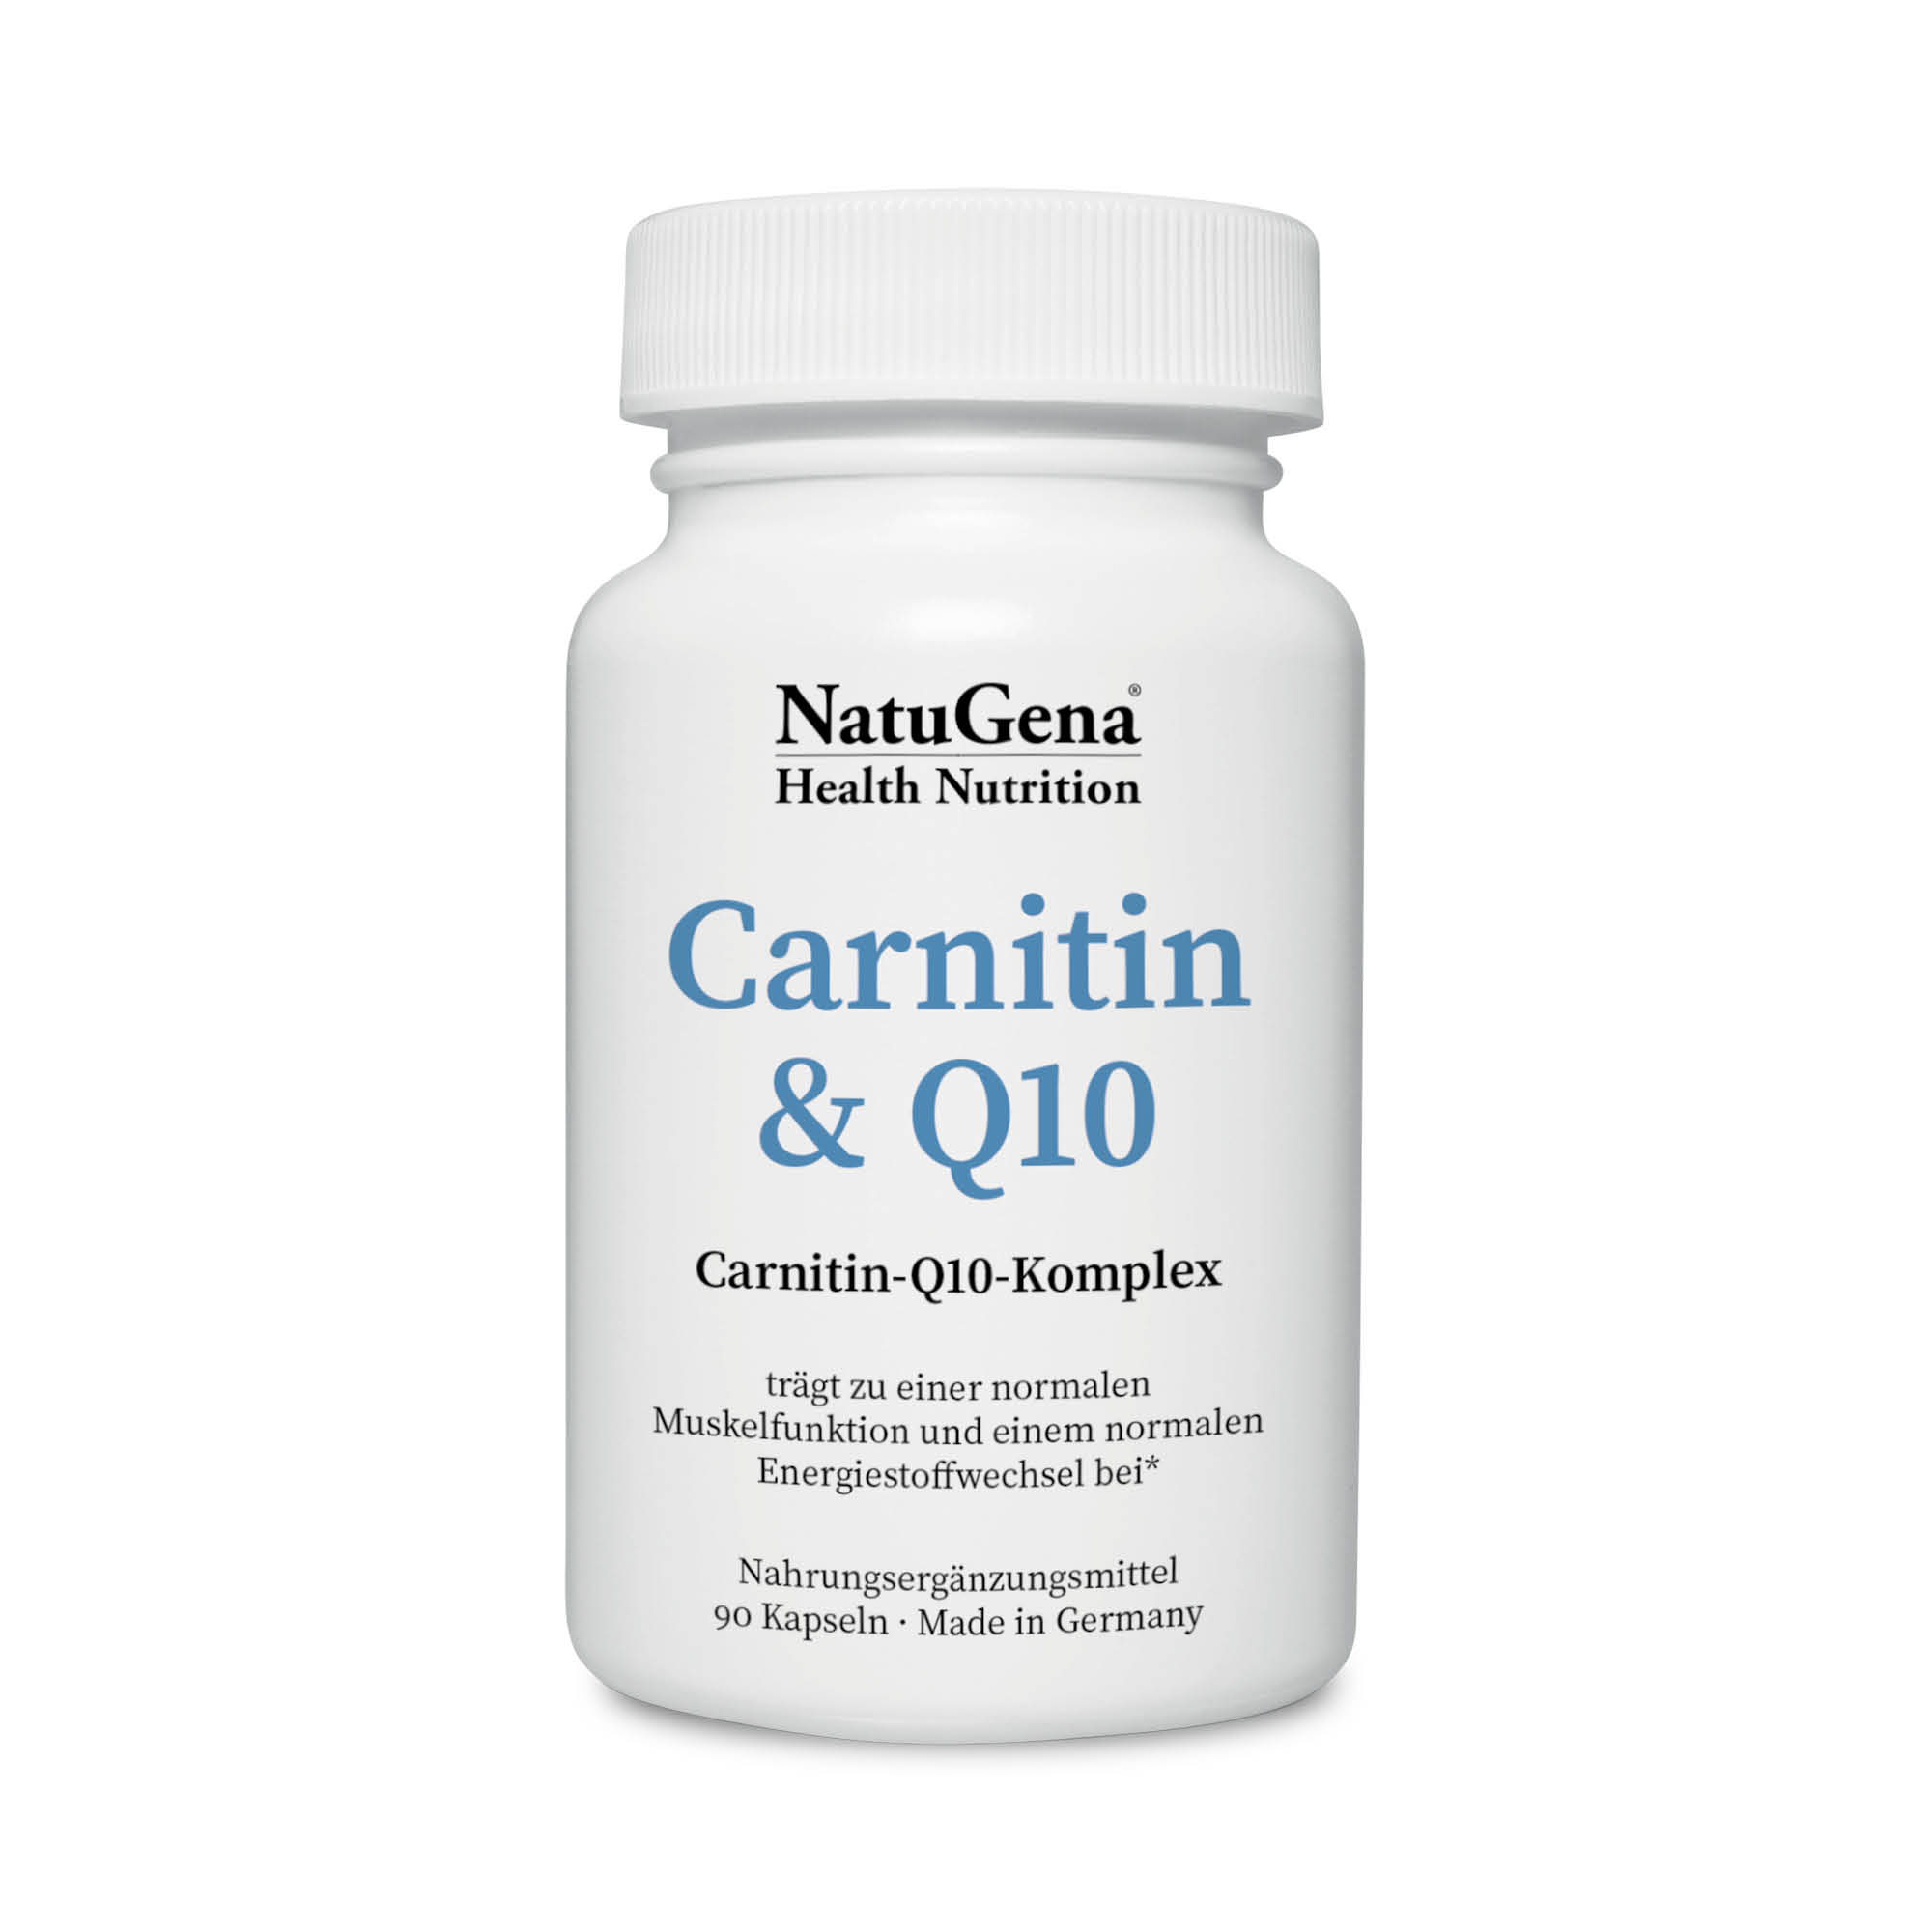 NatuGena Carnitin & Q10 | 90 Kapseln | Zur Förderung des Energiestoffwechsels und der Herz- und Muskelfunktion